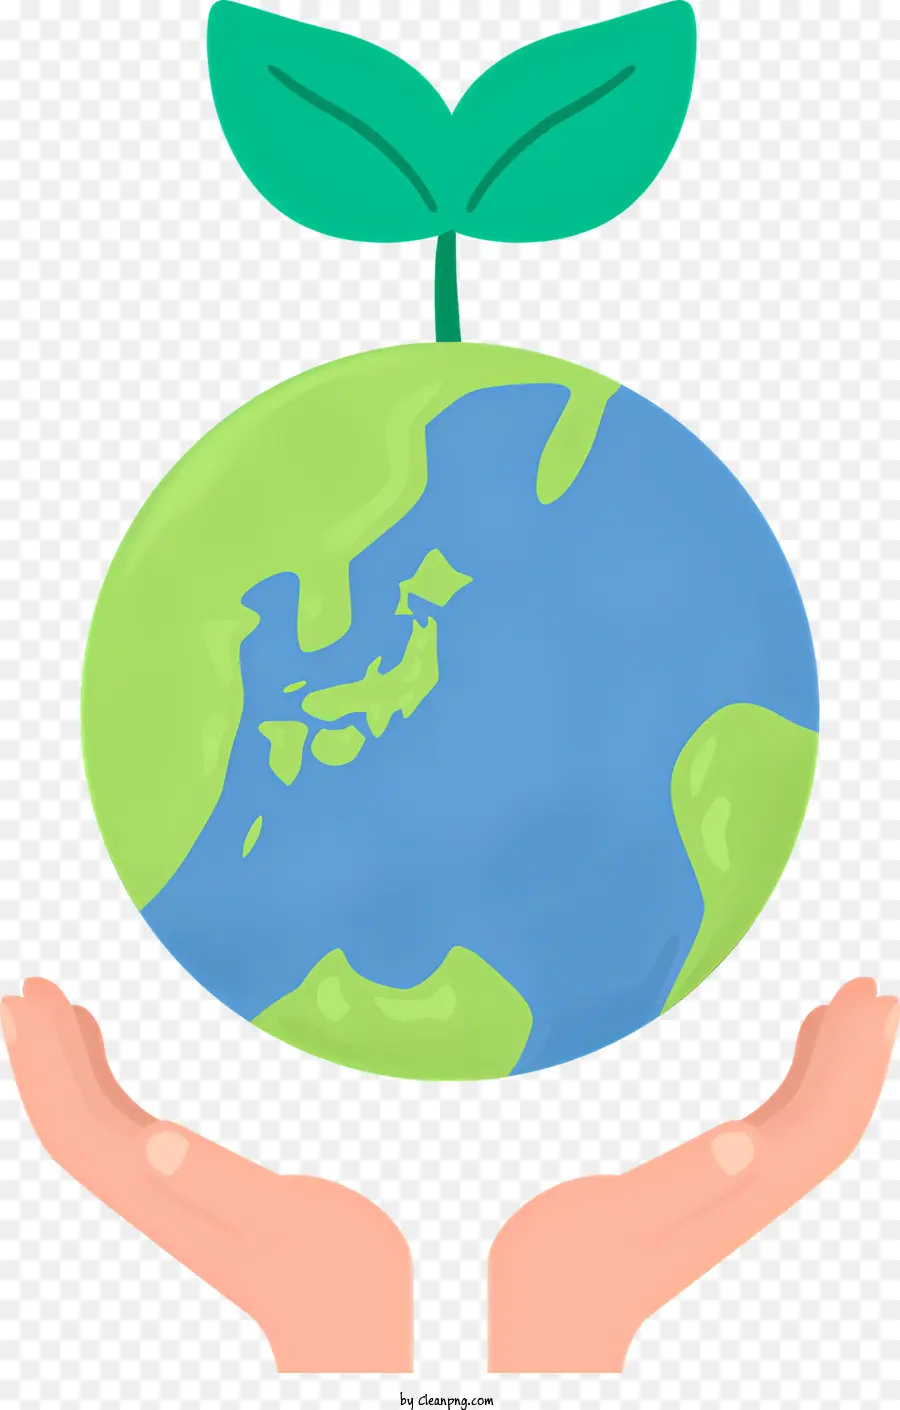 grünes Blatt - Hand hält die Pflanze auf Blue Planet; 
schwarzer Hintergrund